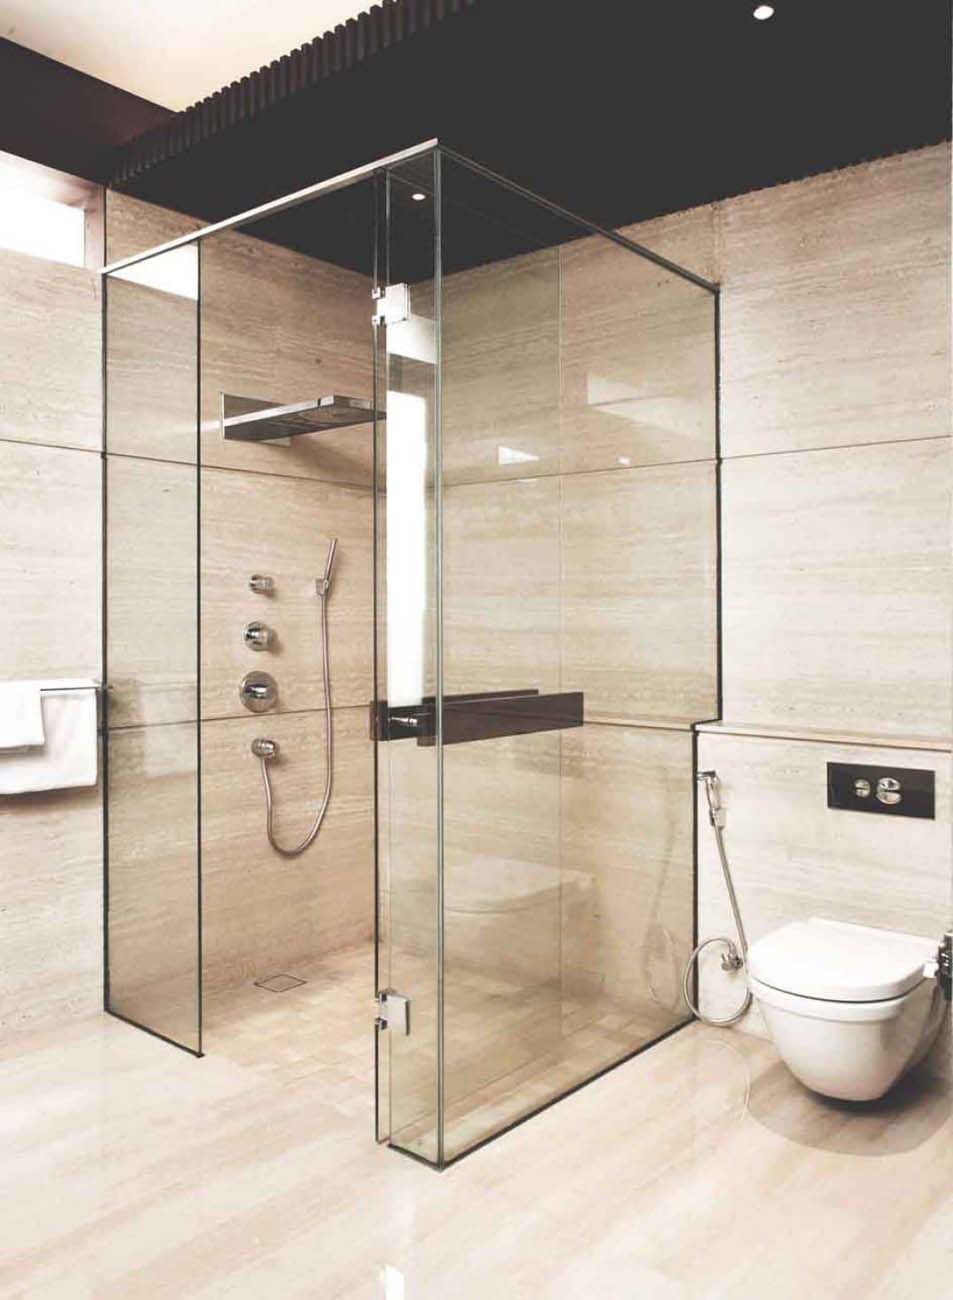 7 Macam Desain Ruang Shower Kamar Mandi Untuk Hunian Anda